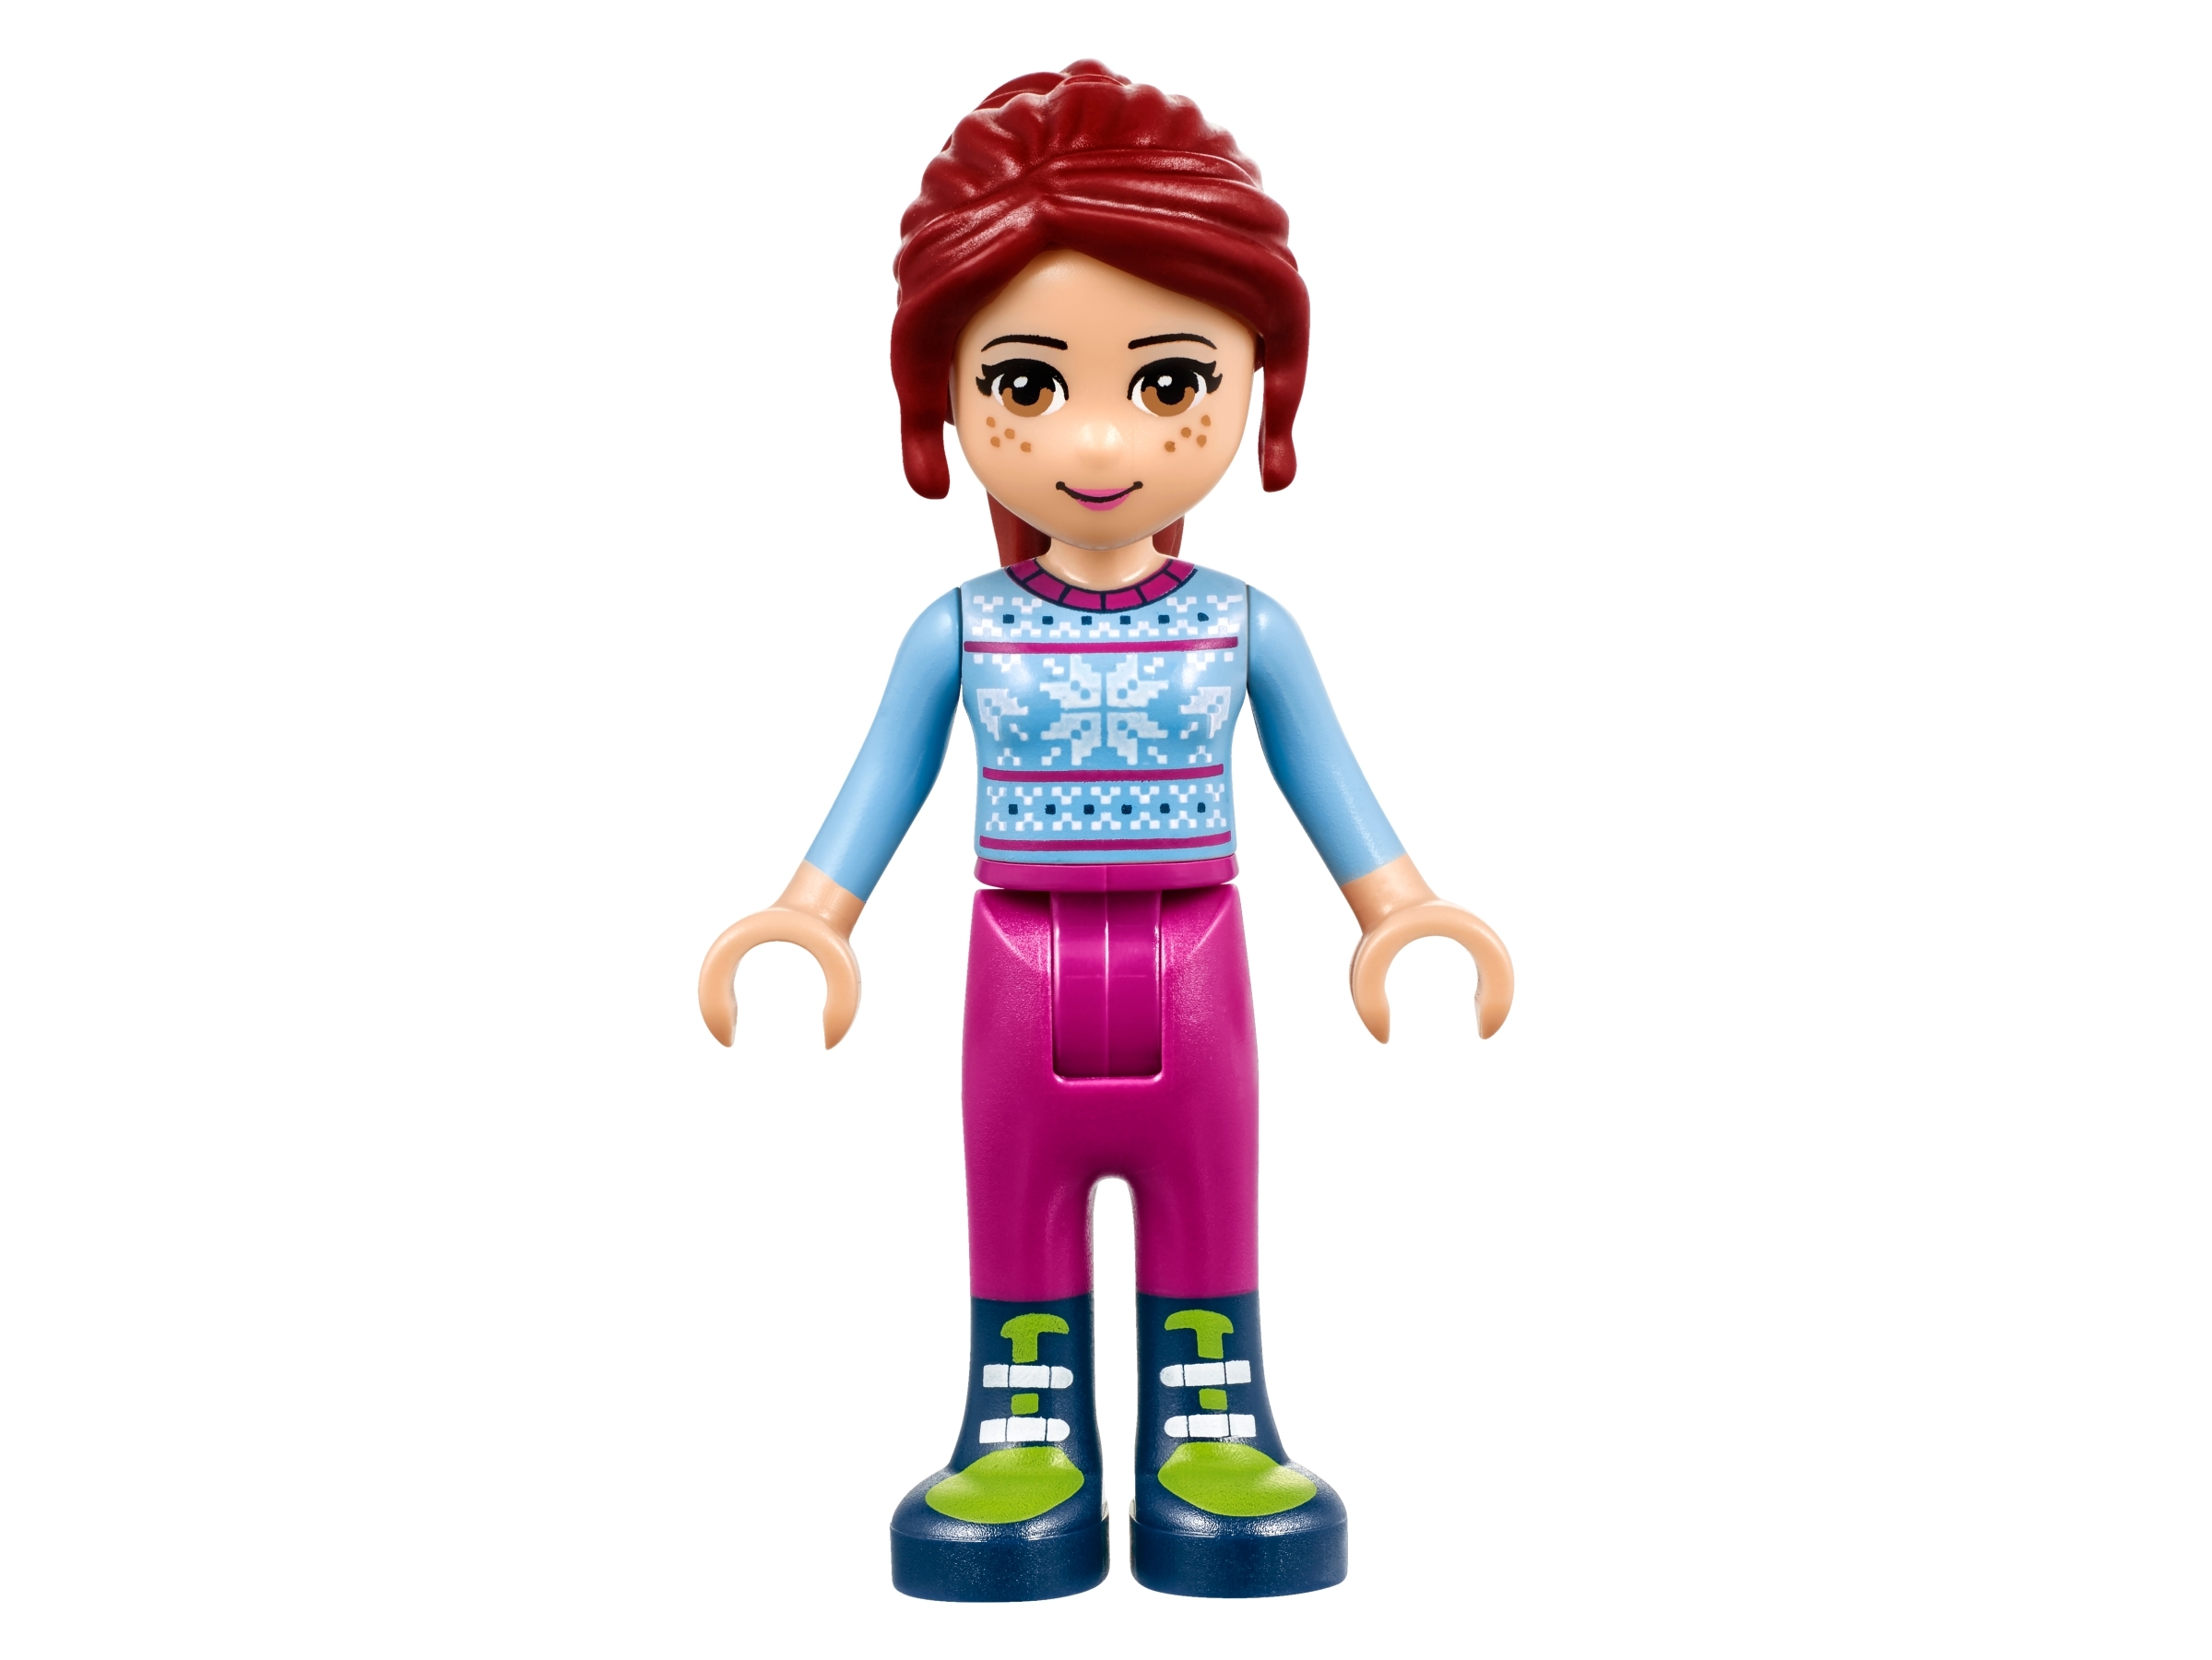 Bliv oppe hældning gå ind Snow Resort Hot Chocolate Van 41319 | Friends | Buy online at the Official  LEGO® Shop US